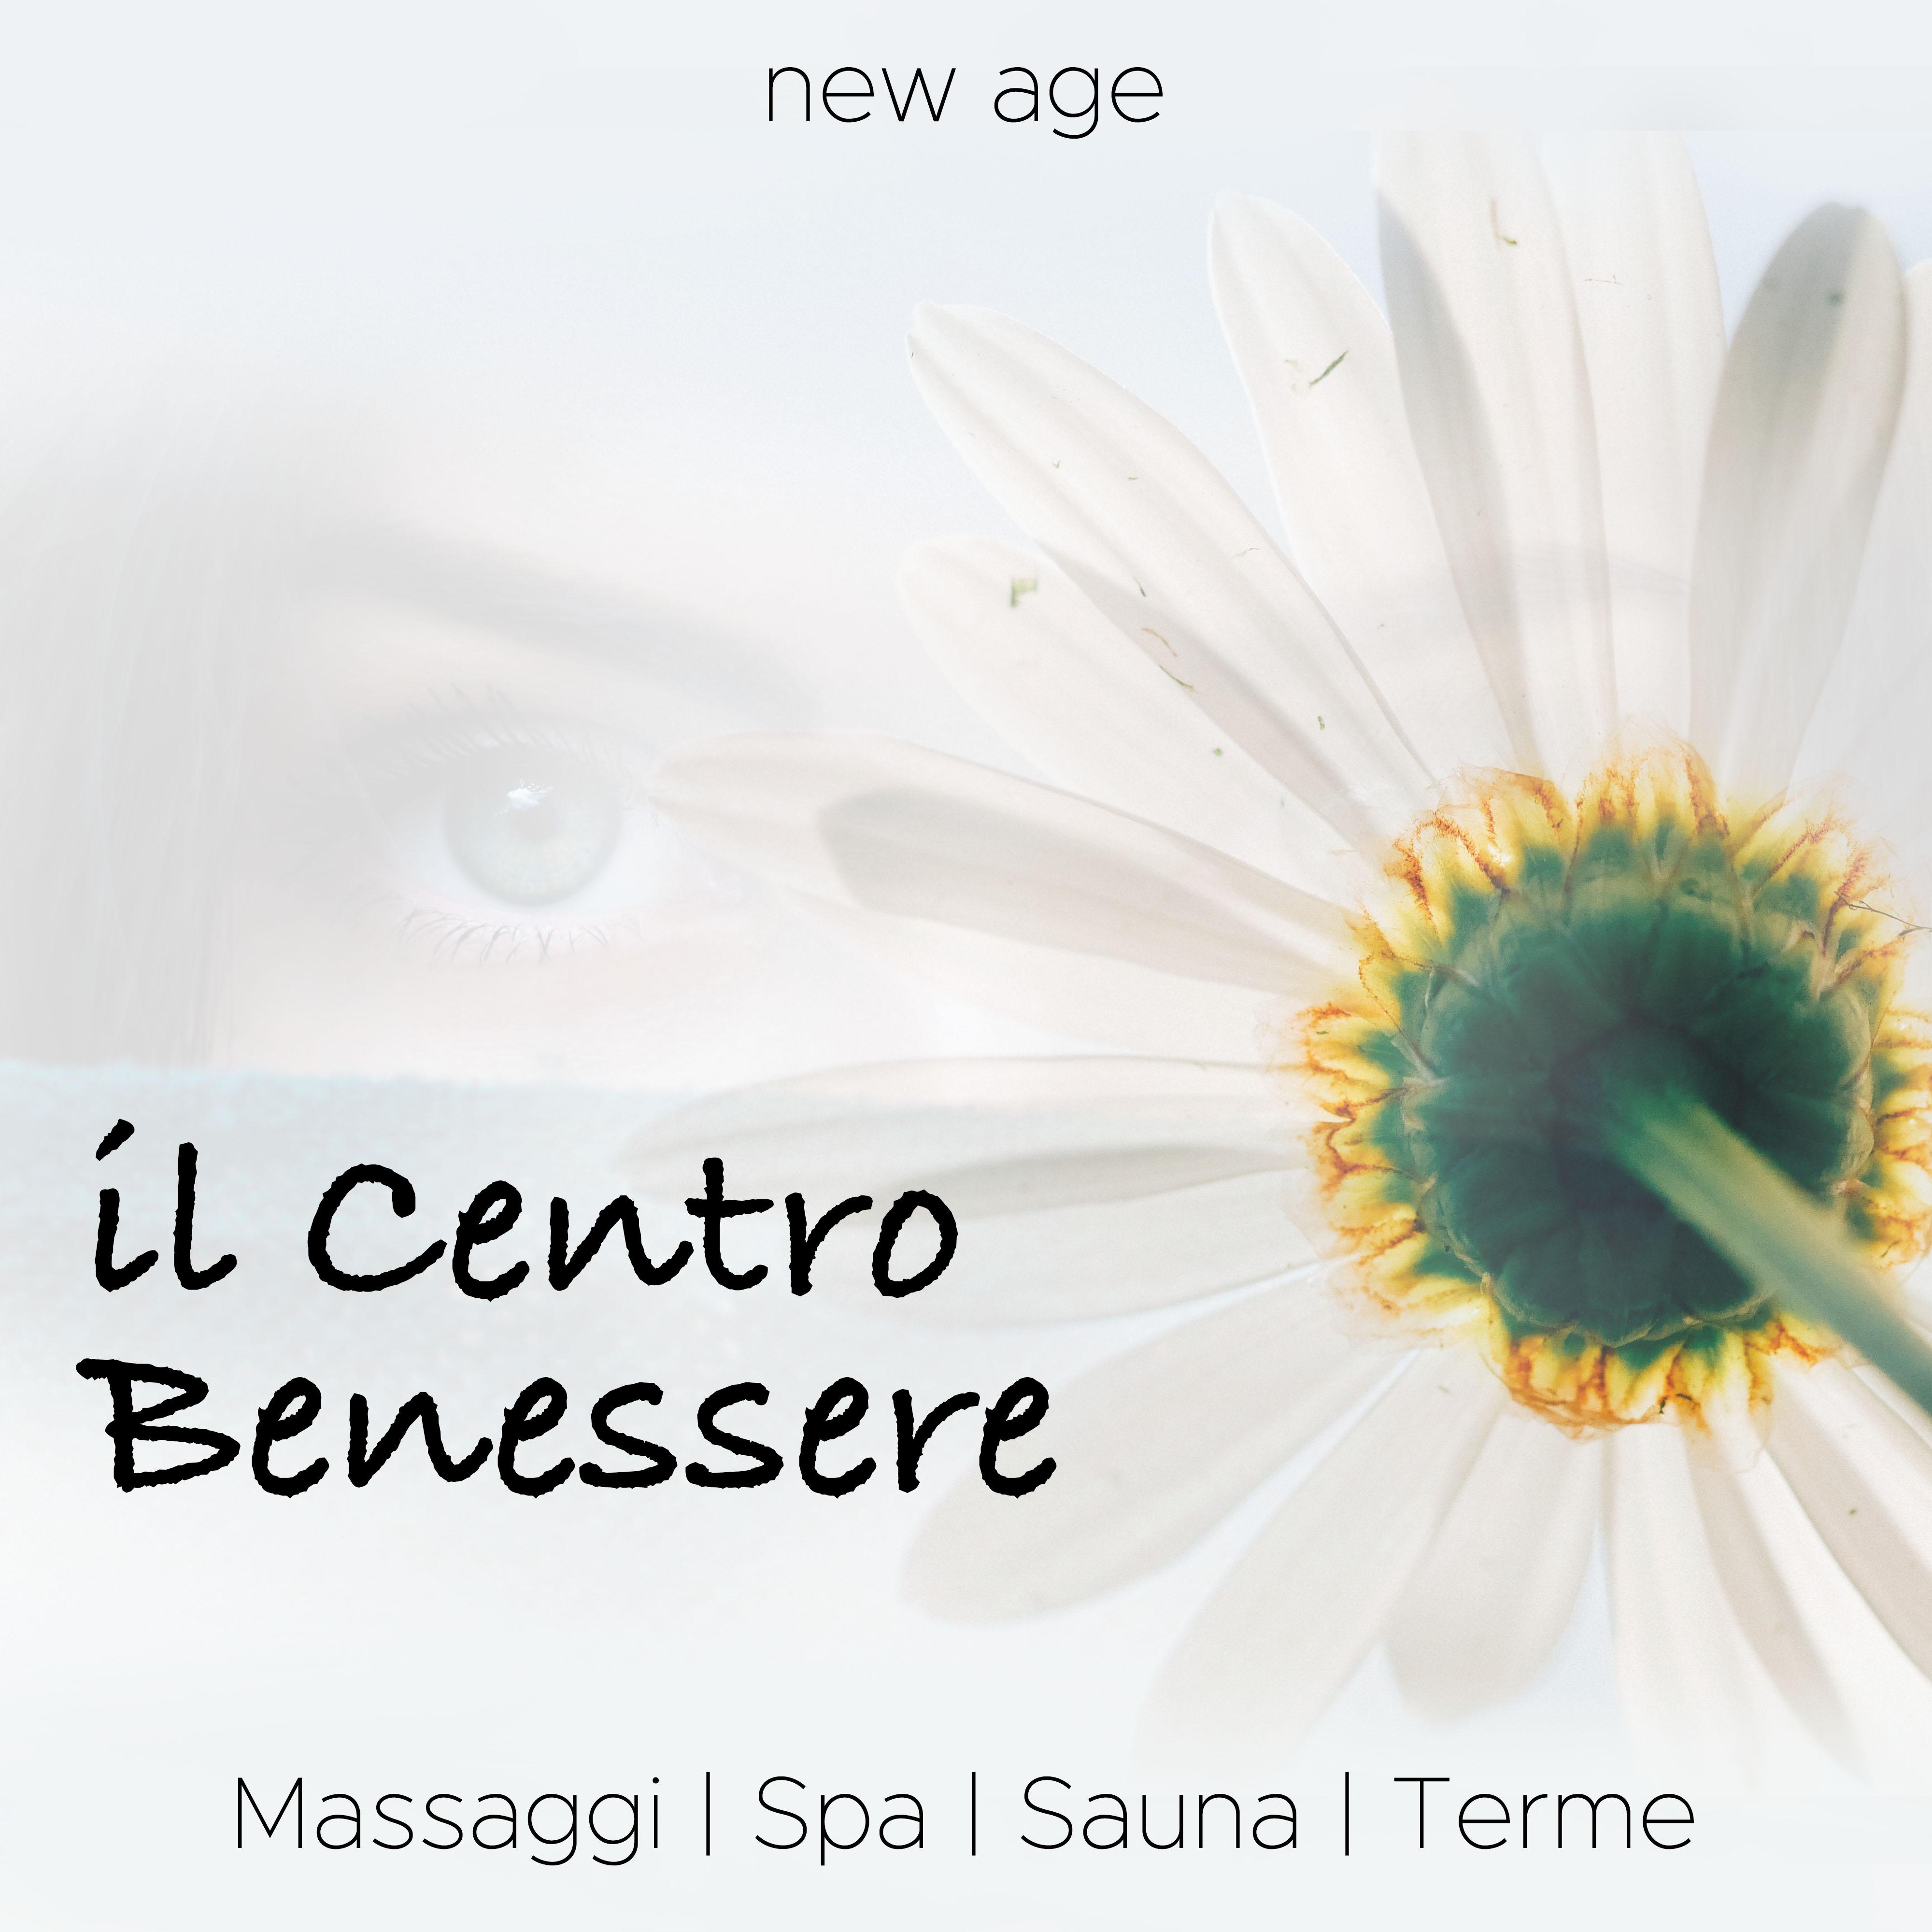 il Centro Benessere - la Miglior Musica Rilassante Per Massaggi, Spa, Sauna e Terme